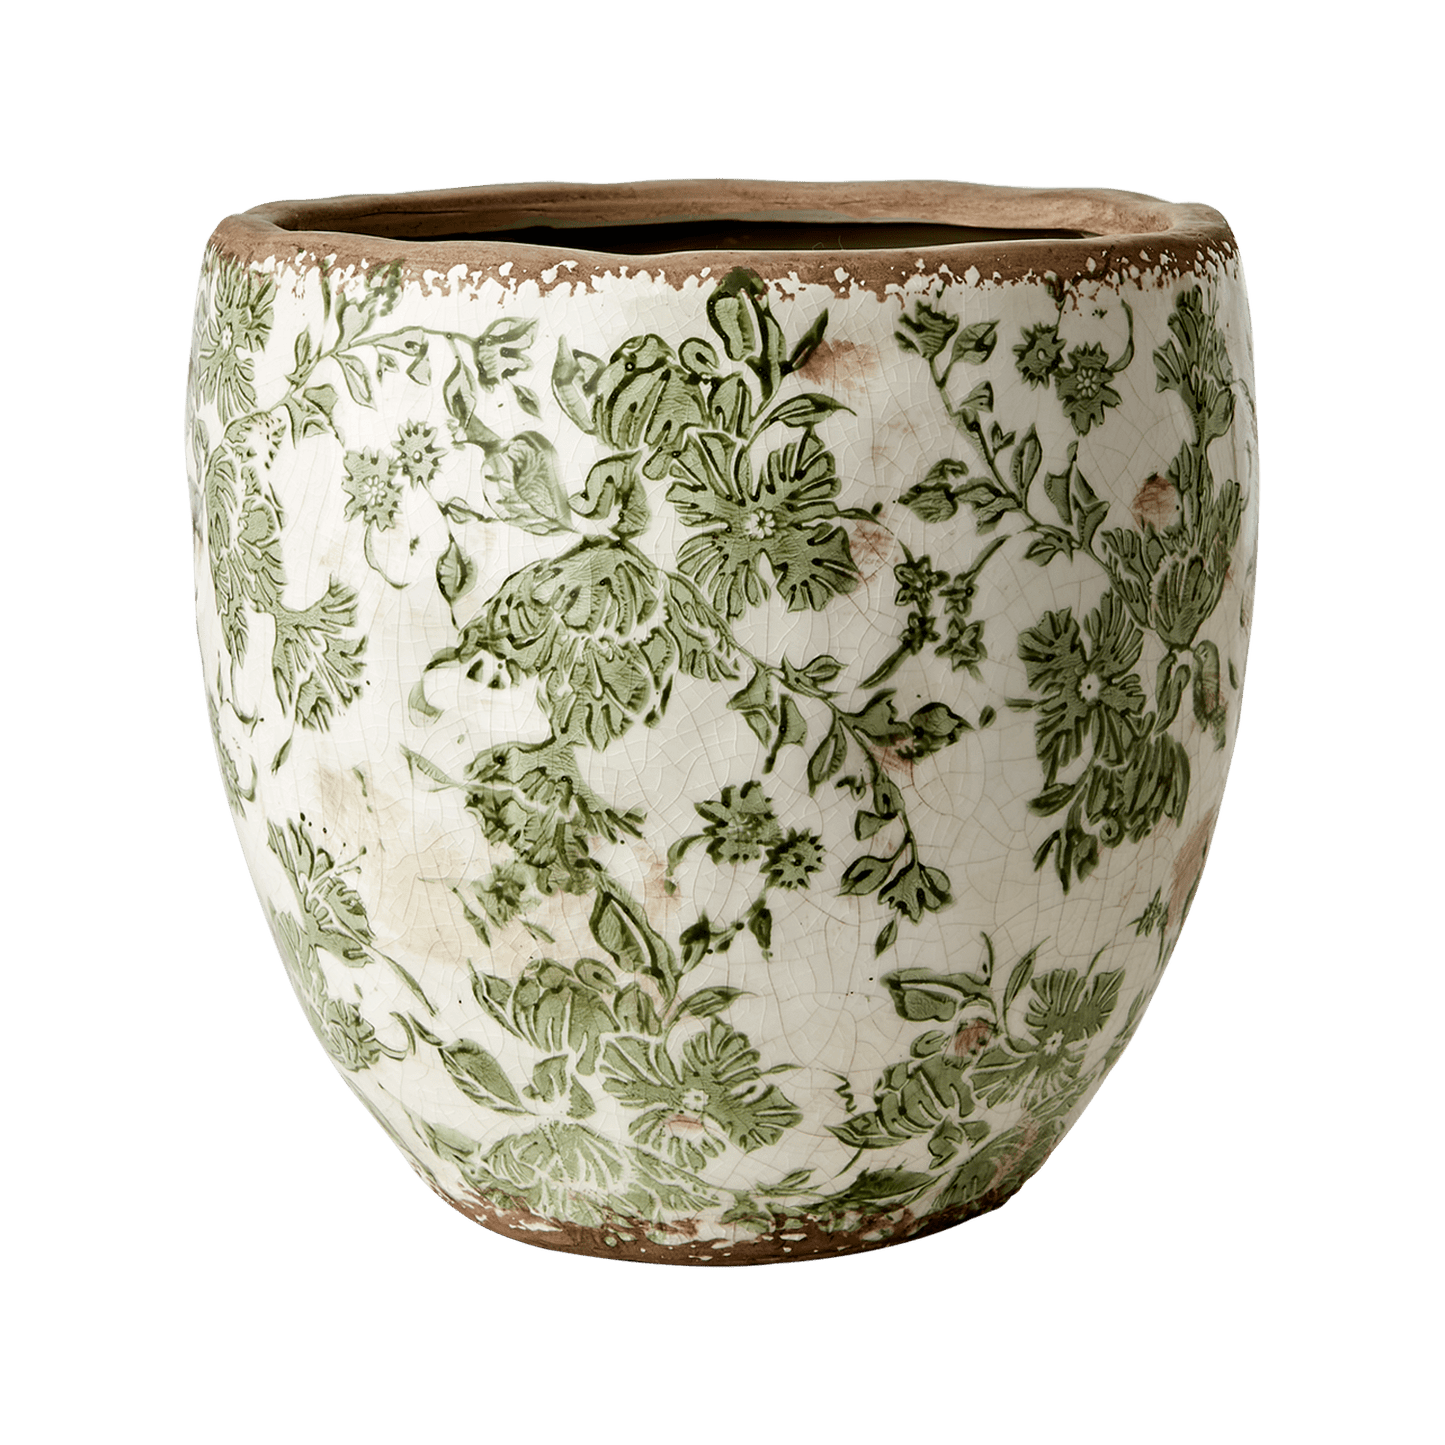 En blomsterpotte i keramikk med et vakkert grønt mønster og vintage preg, alle er unike. Fyll potten med dine favoritt planter og urter og dekorer både hjemmet og hytta. Fra Affari of Sweden.